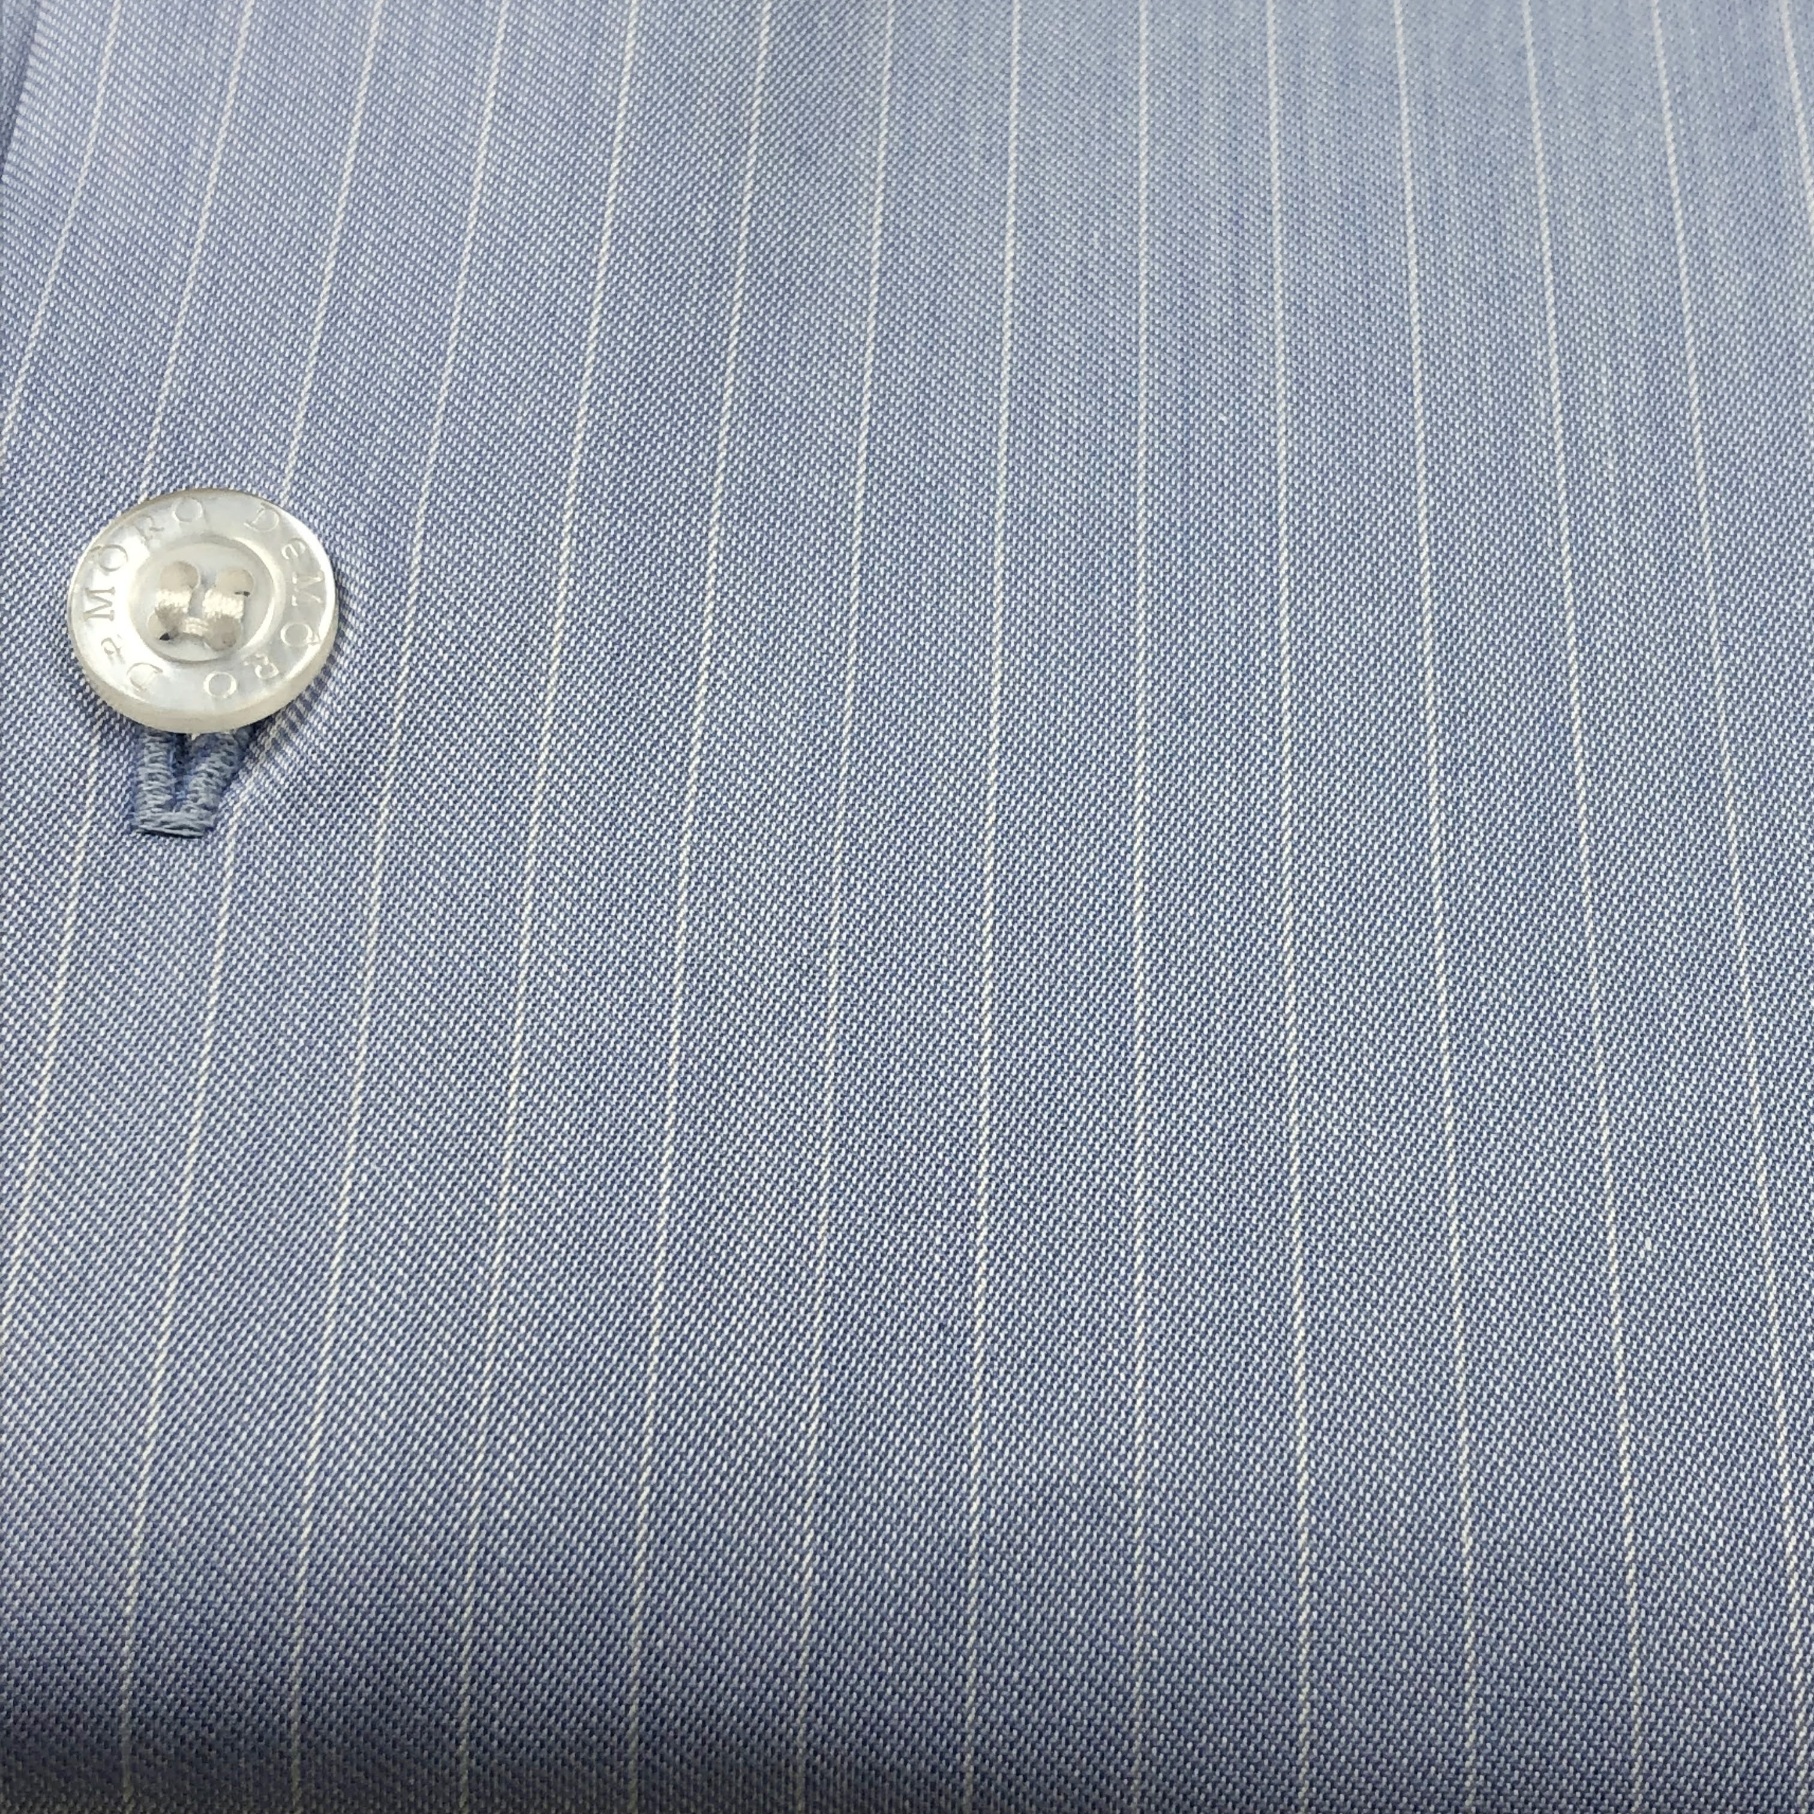 Camisa Sob Medida 100% Algodão fio 120 Egípcio Azul com listras brancas - Foto 2